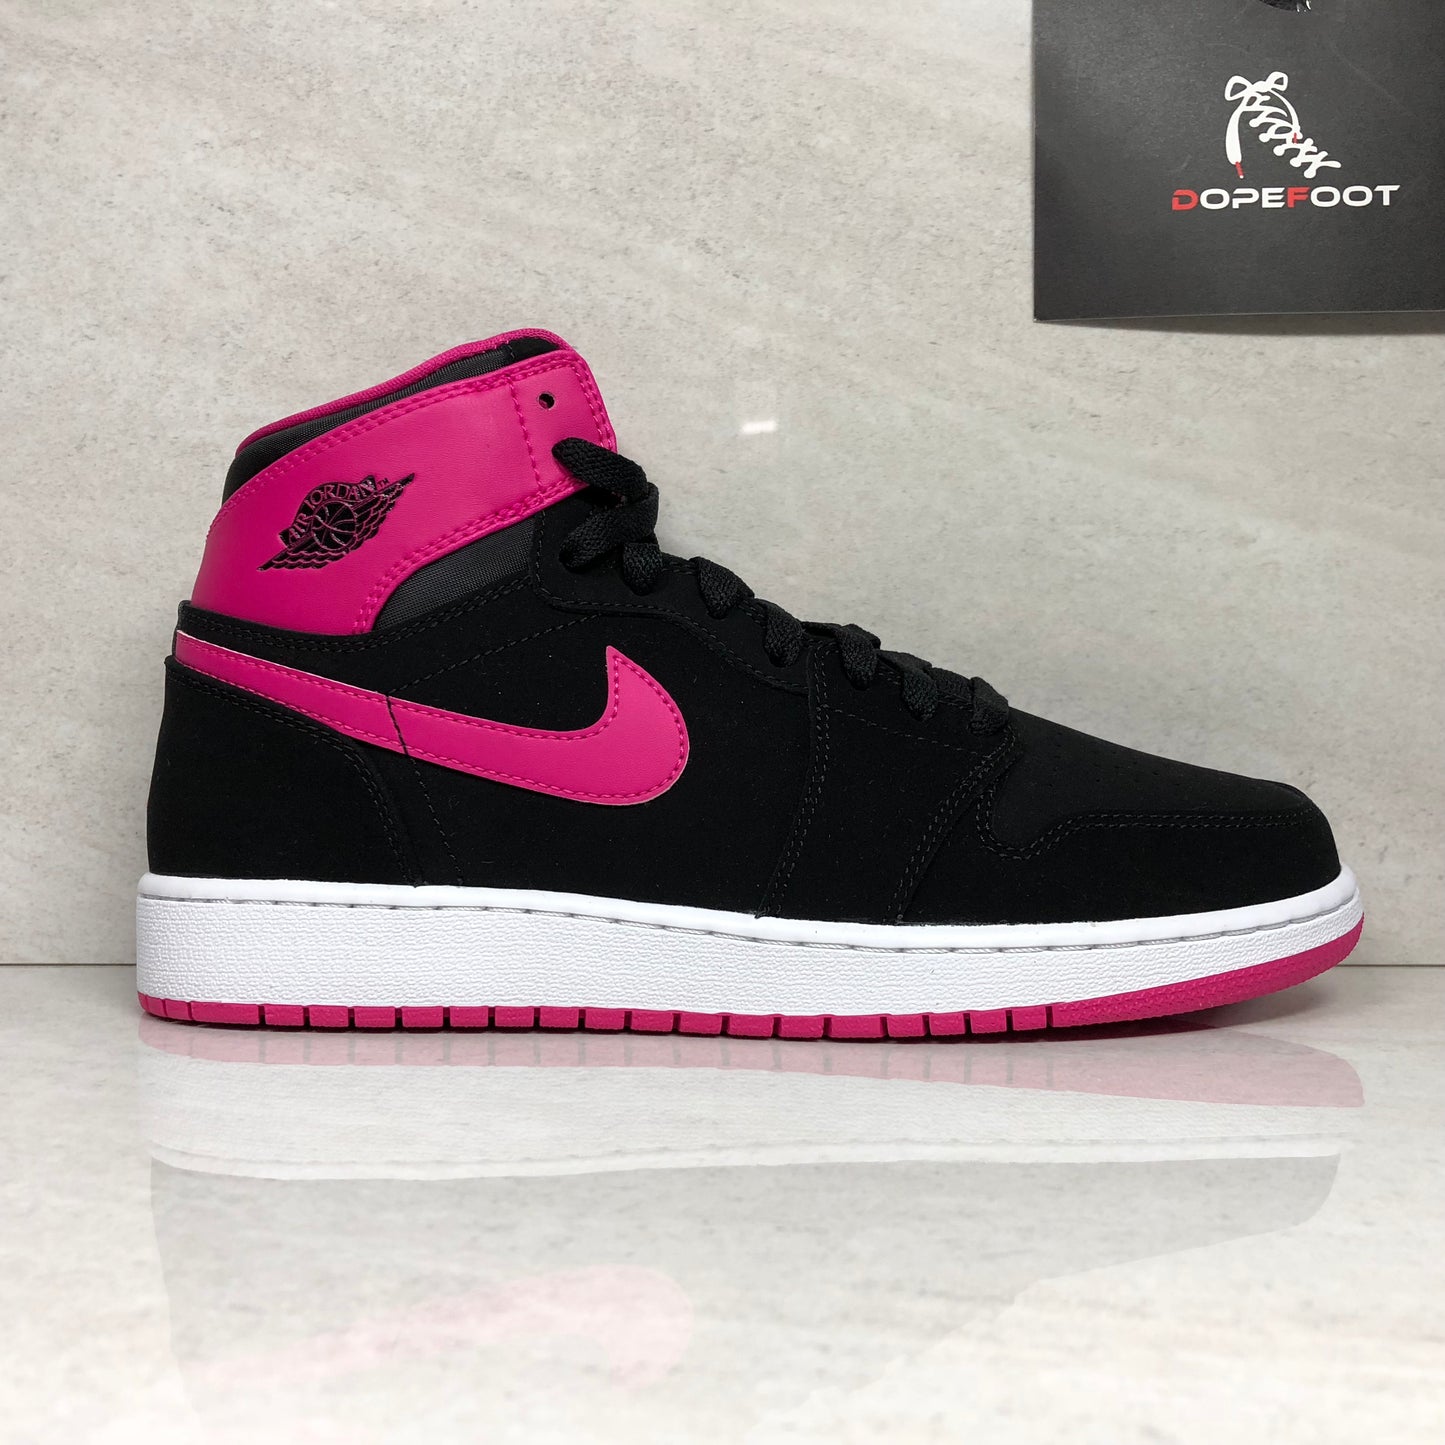 DS Nike Air Jordan 1 Retro High GG Tamaño 8Y/8.5Y Negro/Rosa vivo 332148 008